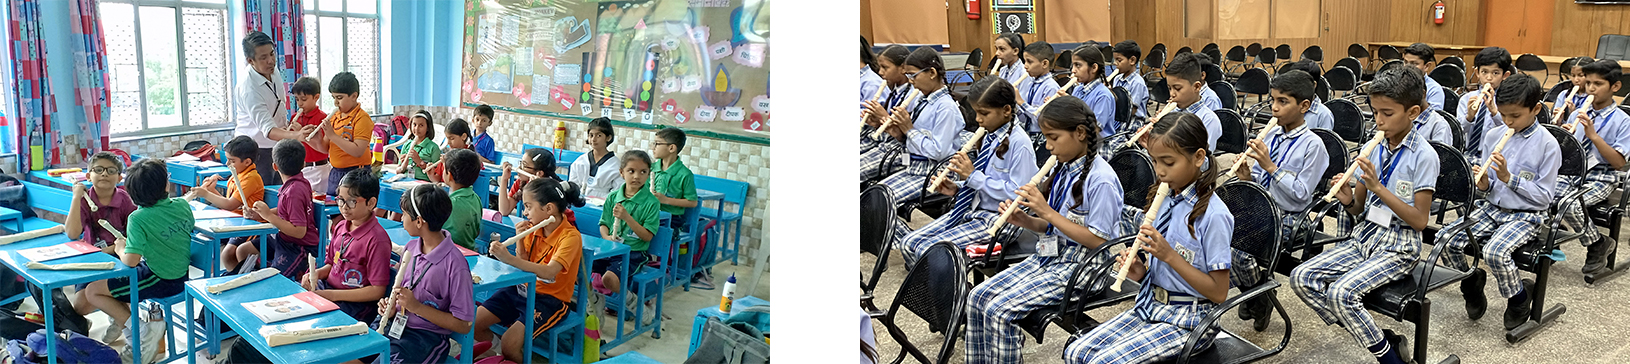 インドにおける取り組み事例 、リコーダー授業の様子1